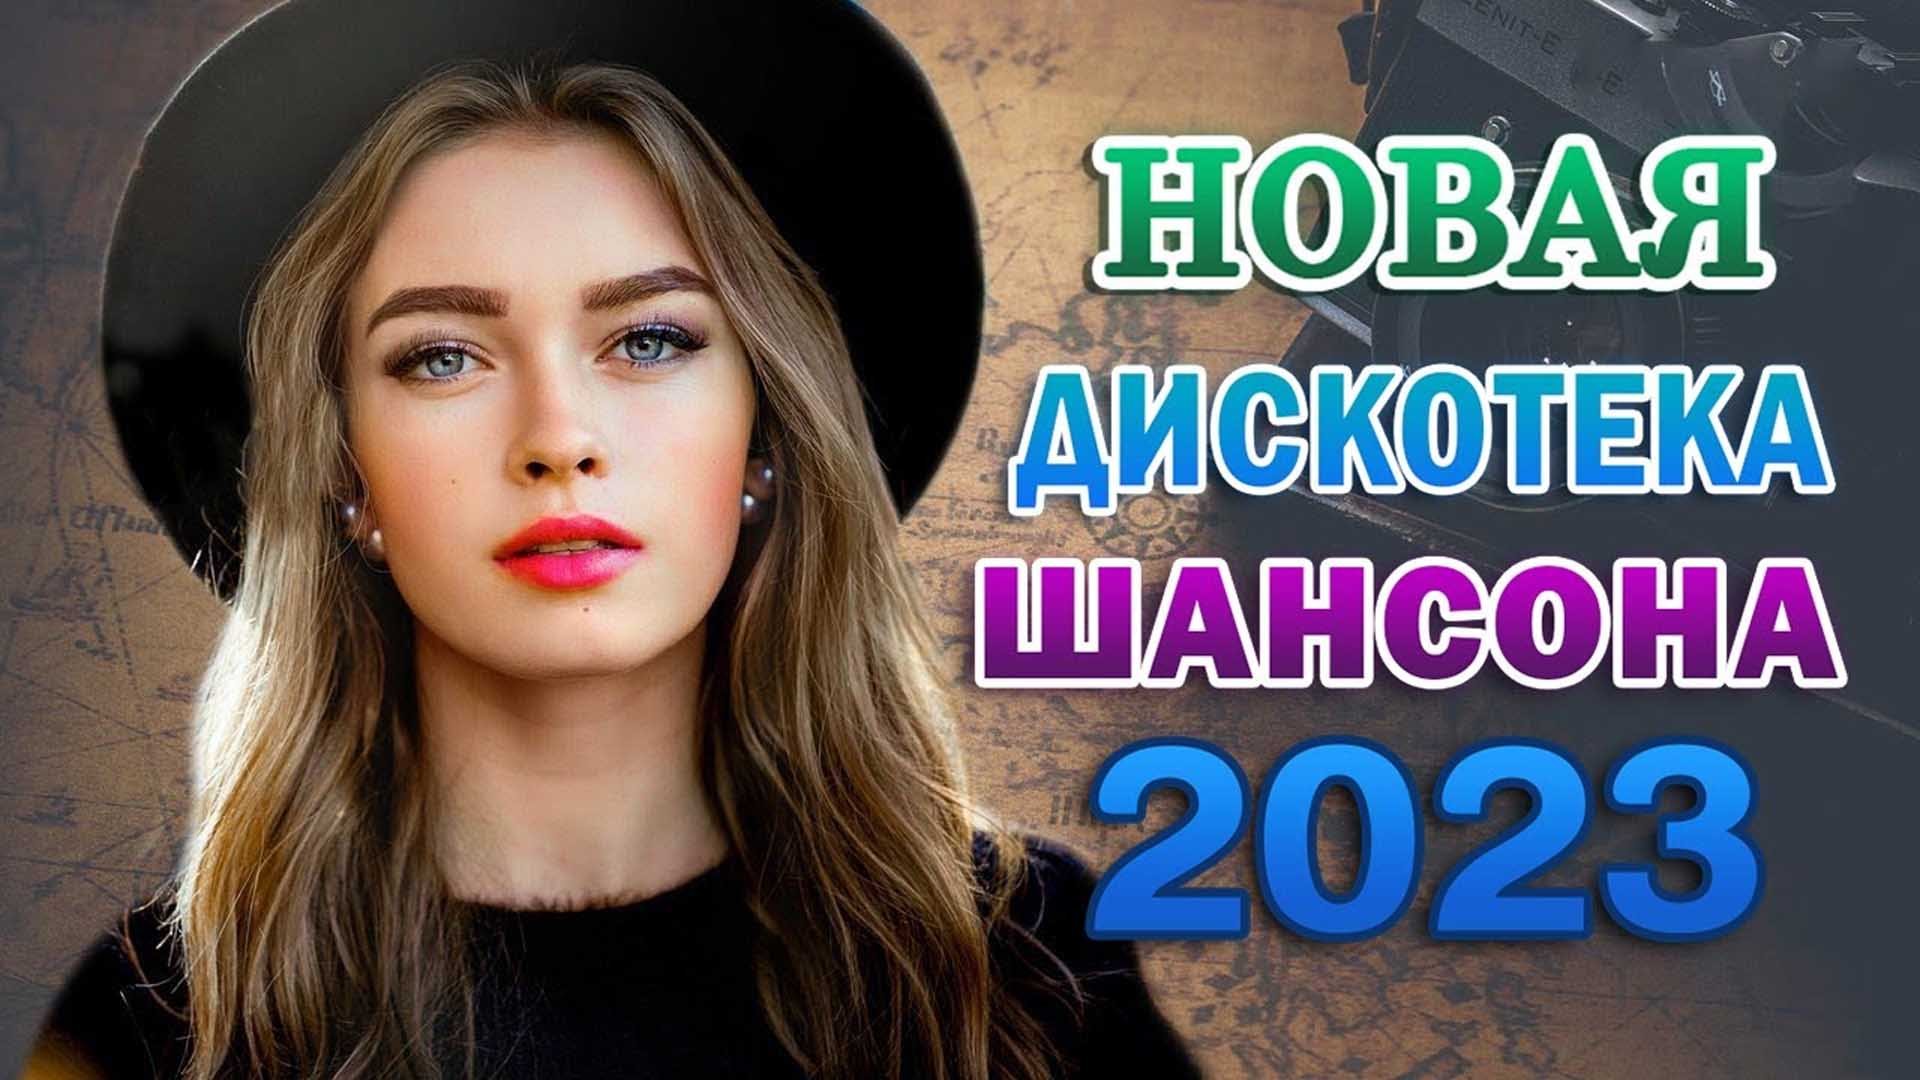 Сборник русских шансон 2023